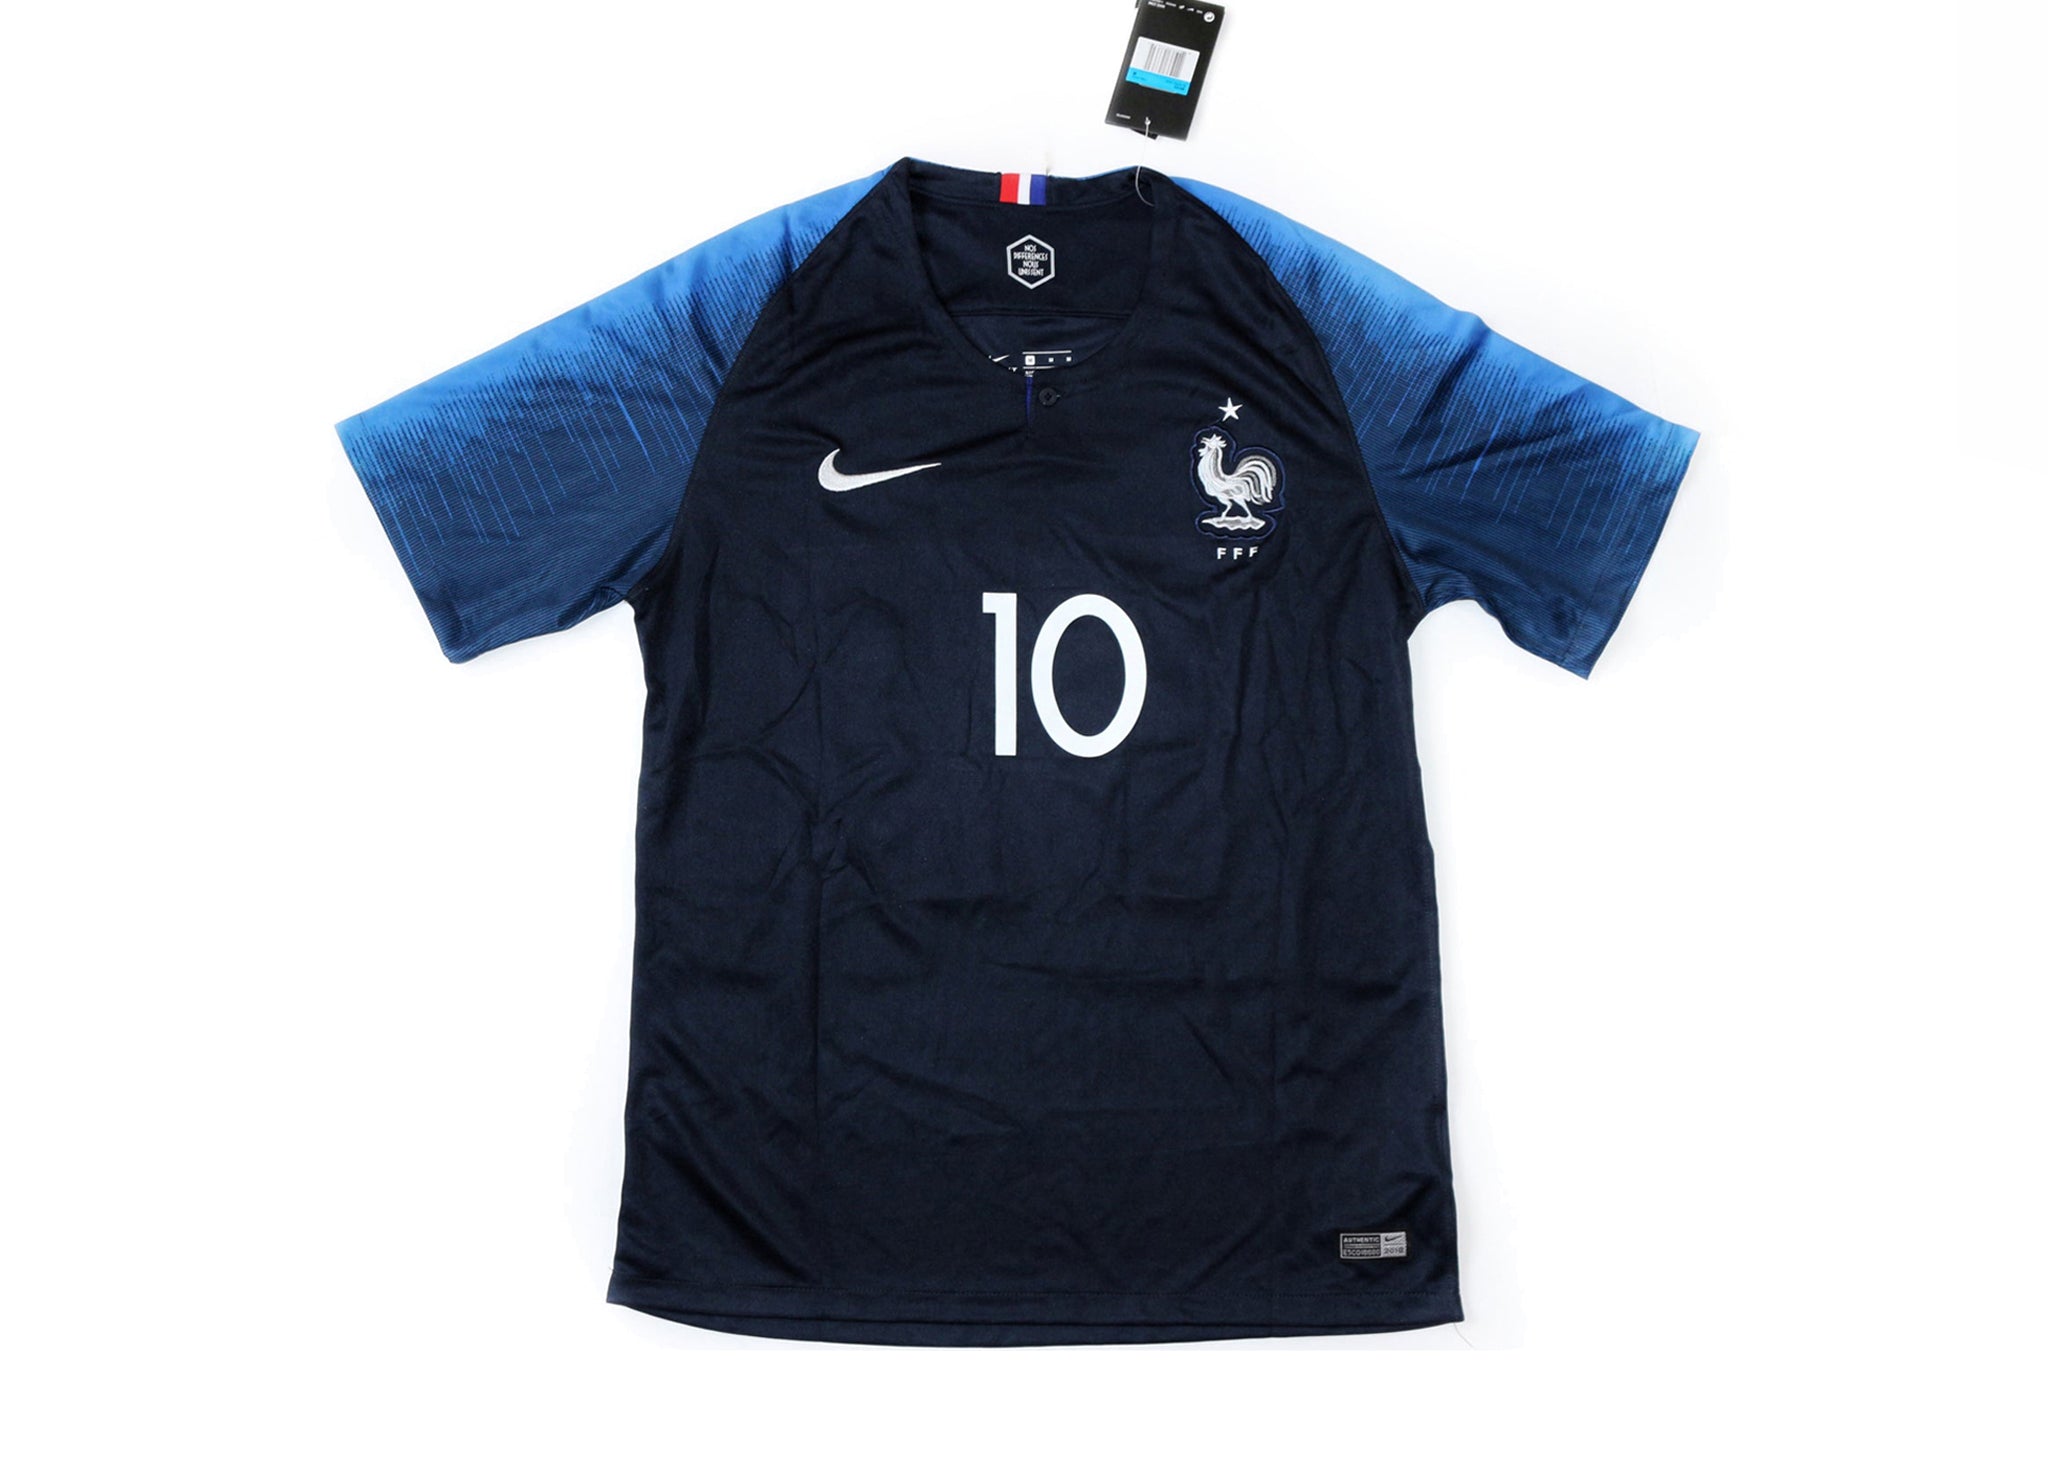 2017-18 France home jersey (#10 Mbappé)